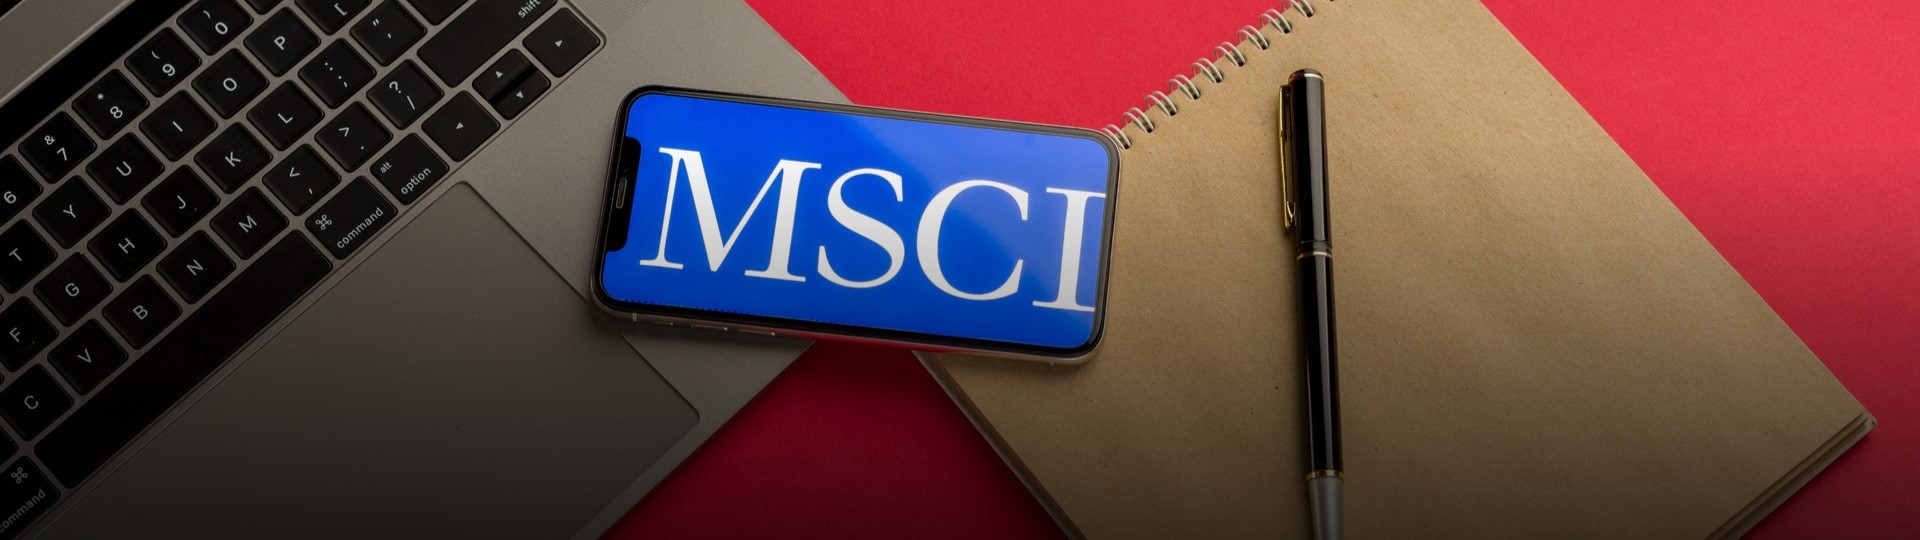 Společnost MSCI vyřadí čínské firmy z globálních indexů